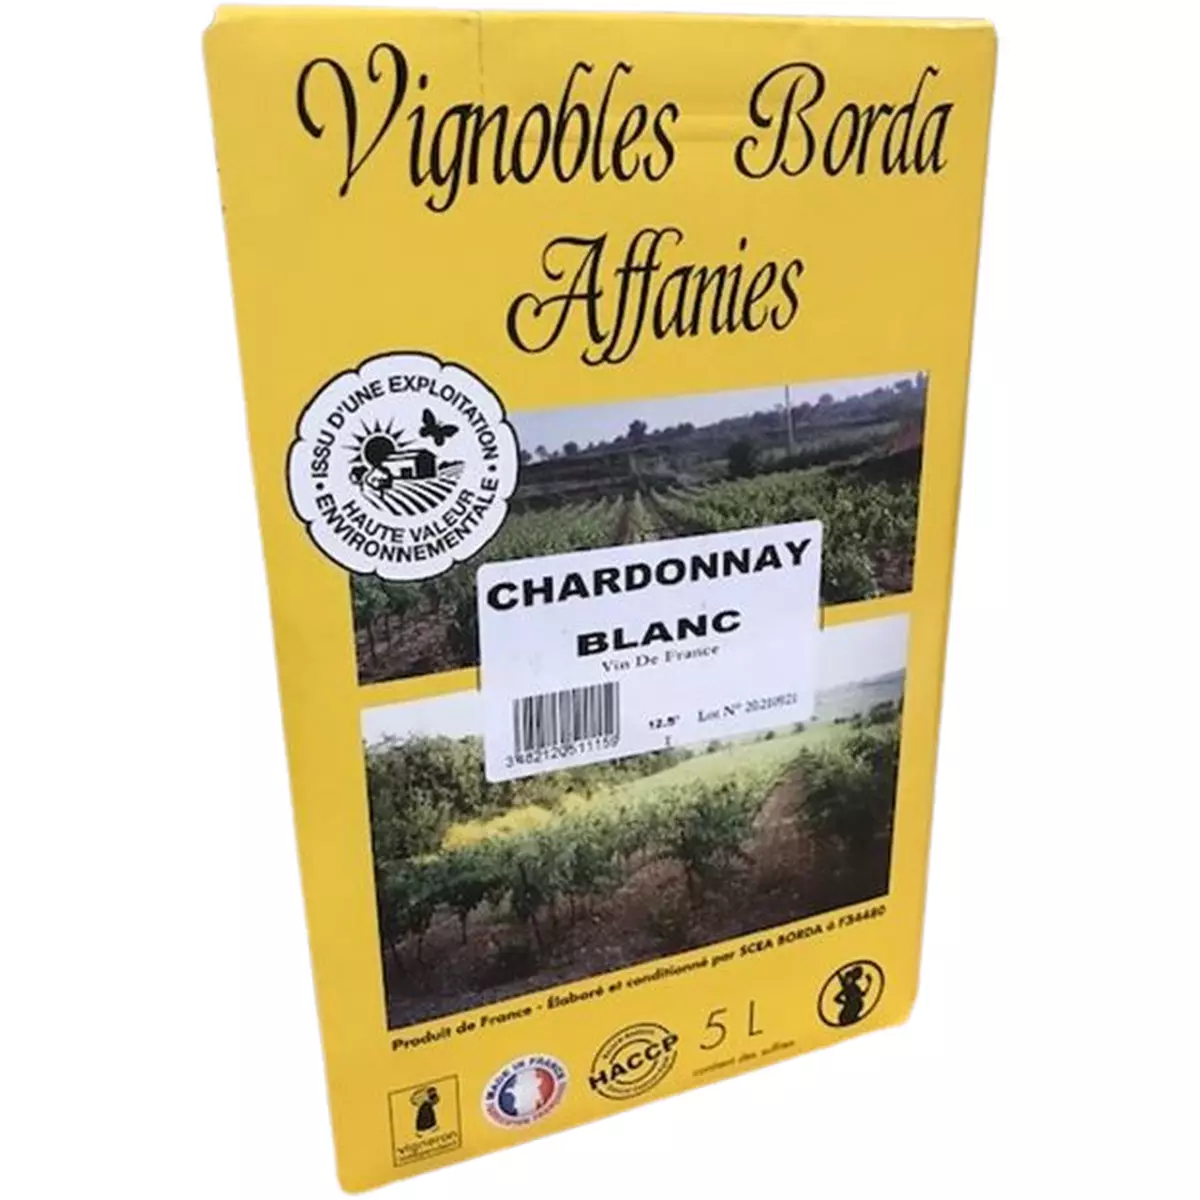 Vignobles Borda Affanies Chardonnay blanc bib 5l